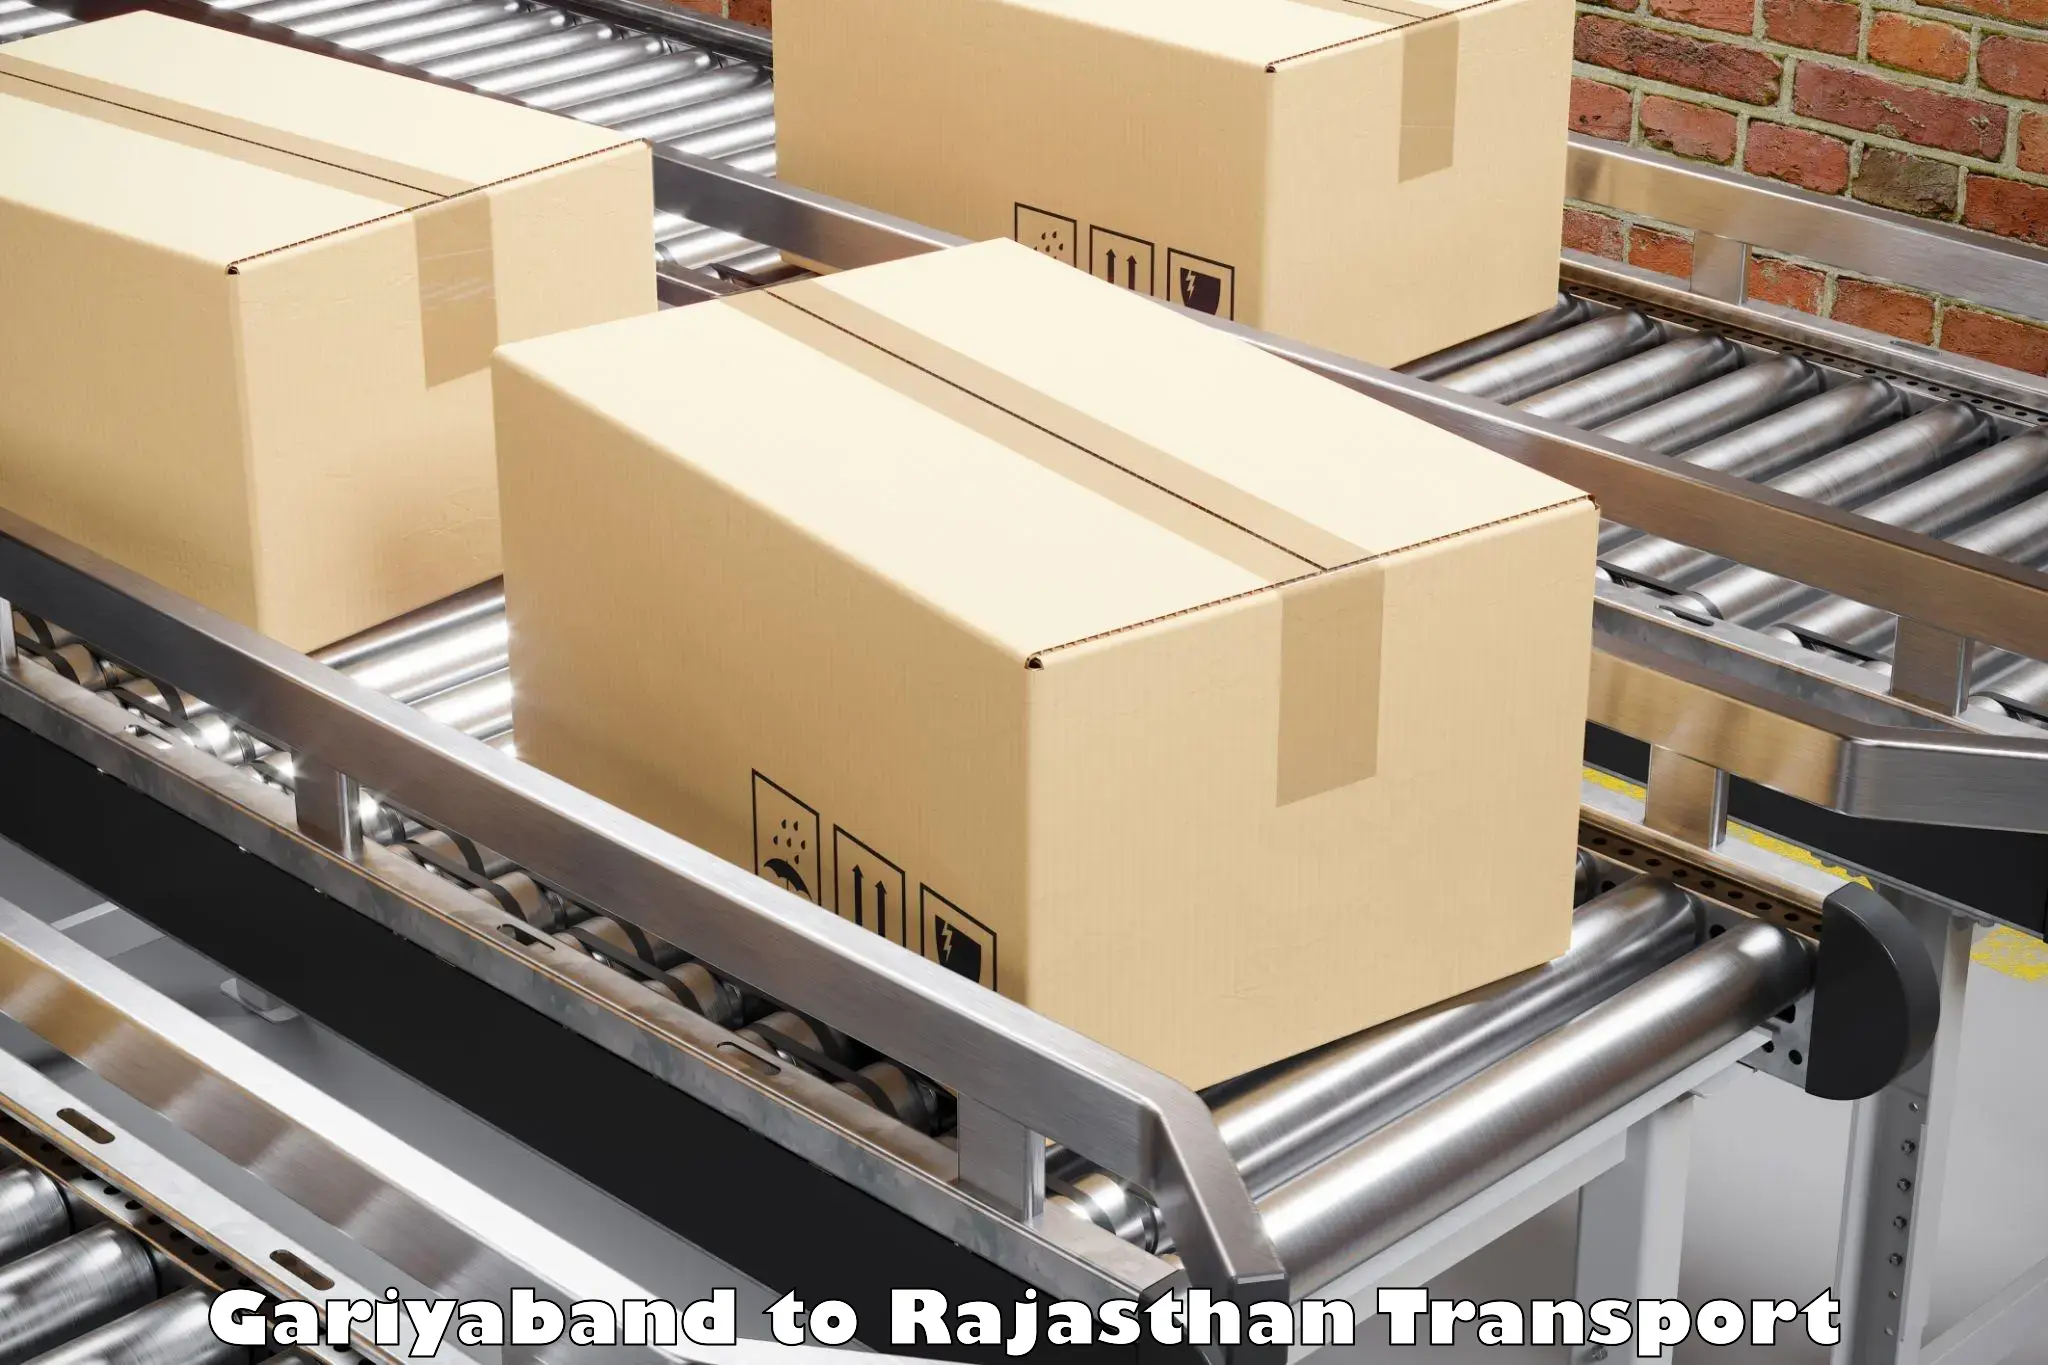 Land transport services Gariyaband to Rajasthan